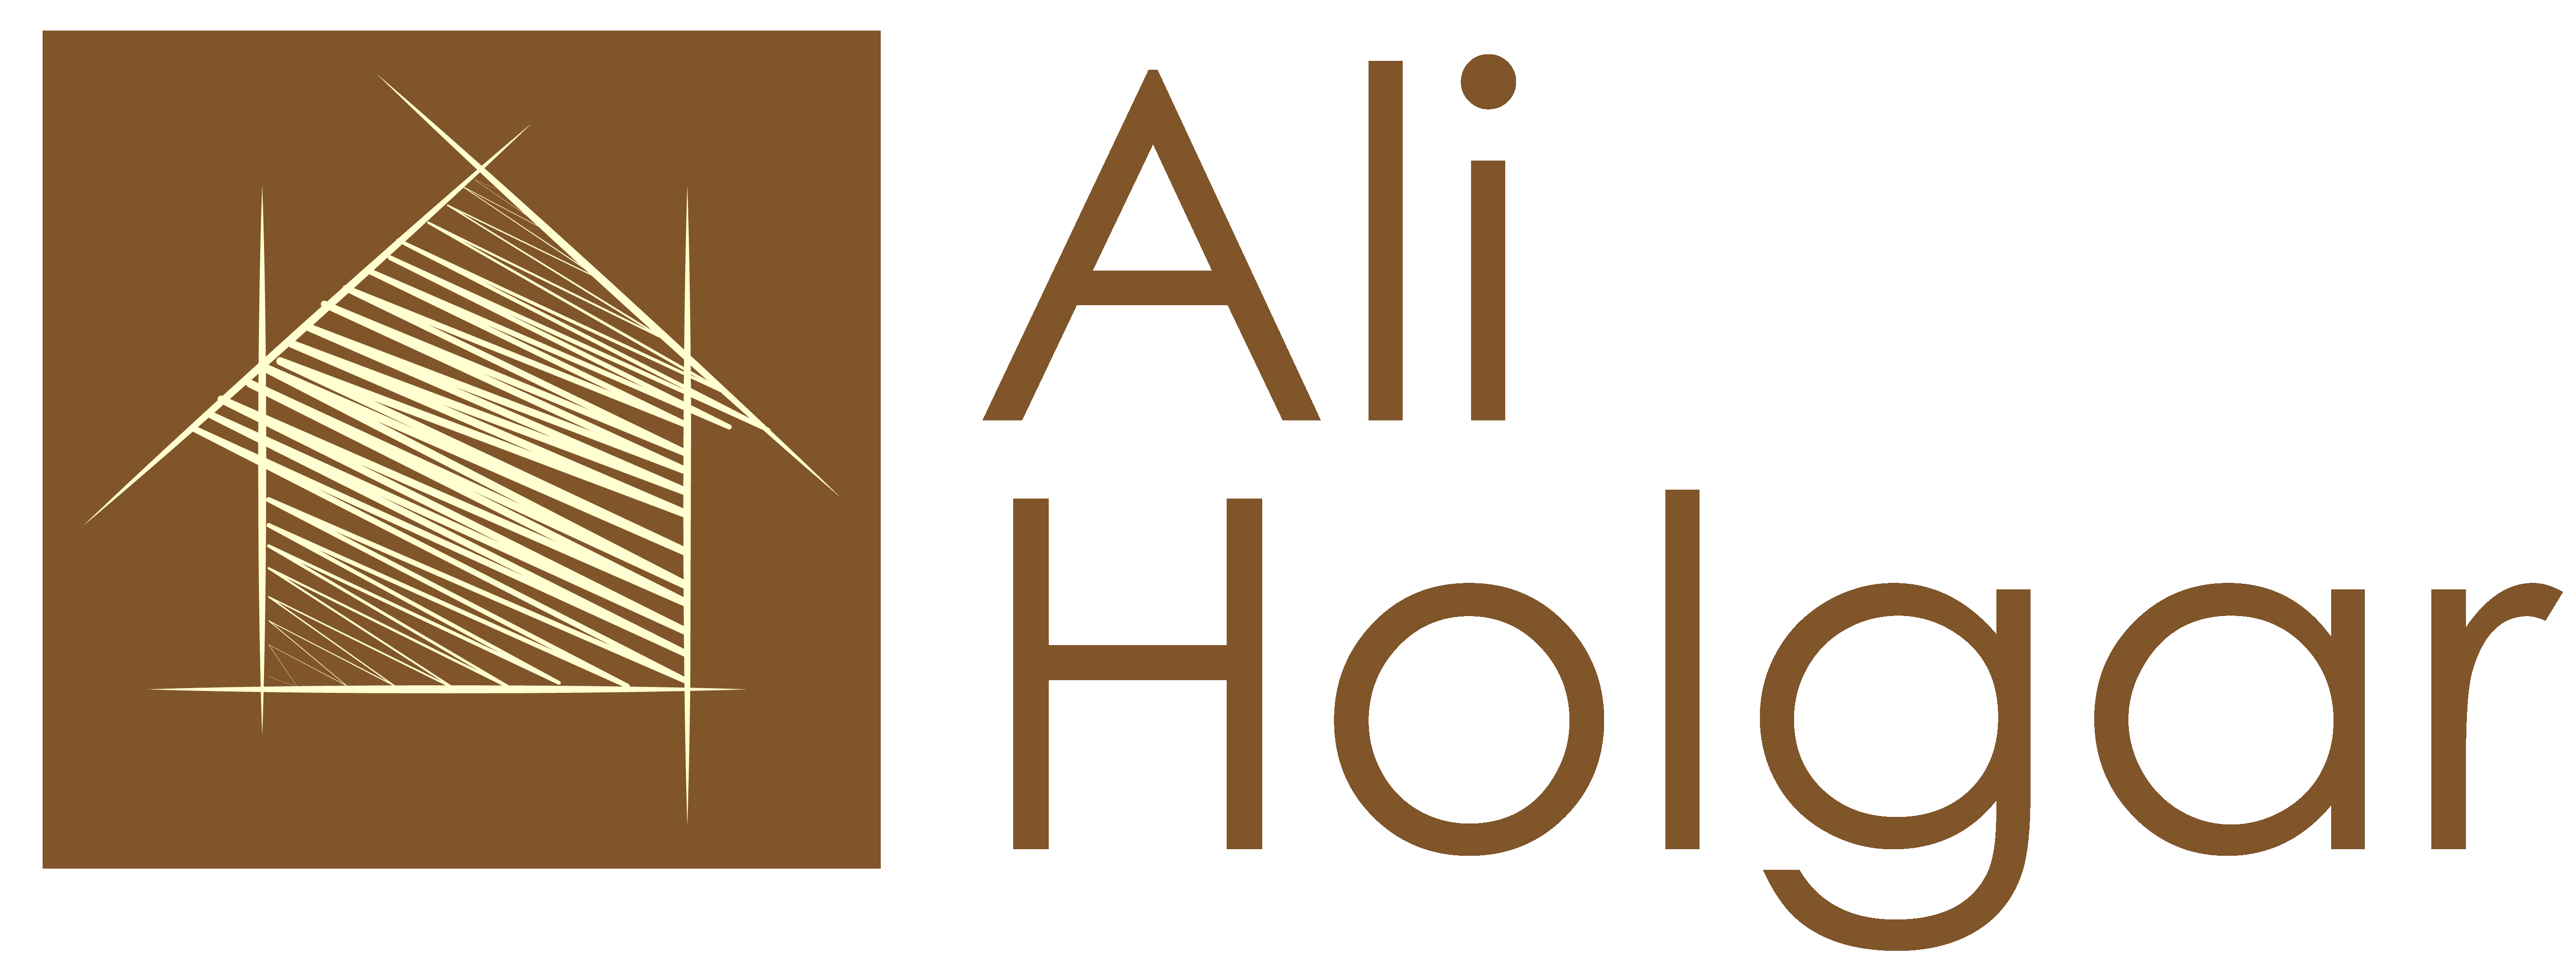 Ali Holgar